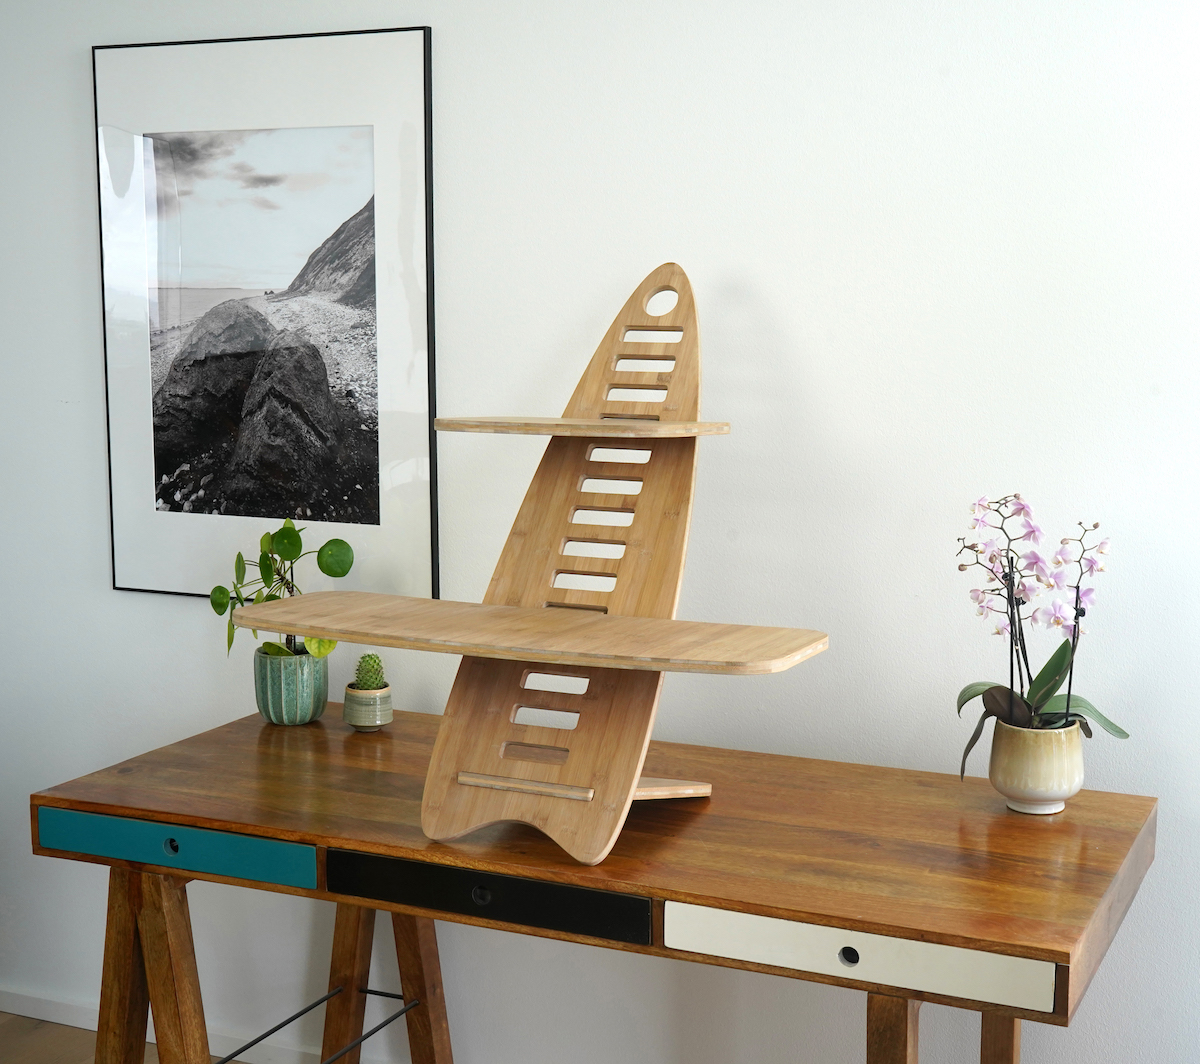 Gaia Craft Hæve sænkebord i bambus 'Naturlig'. Gaia Craft Hæve sænkebordet står på et dekoreret skrivebord